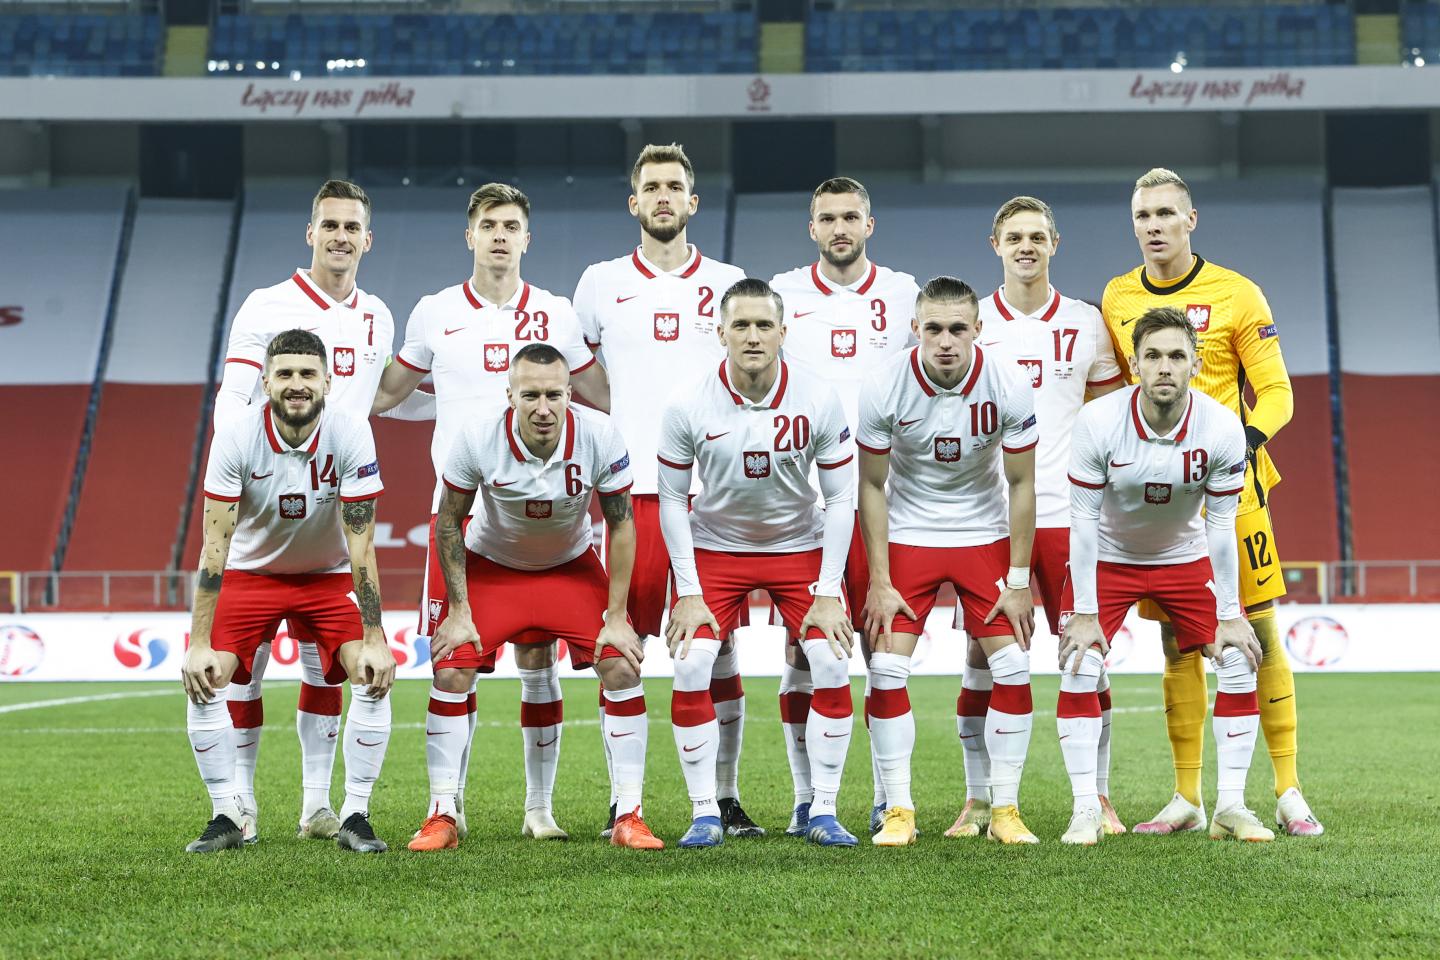 Reprezentacja Polski przed meczem Polska - Ukraina 2:0 (11.11.2020).